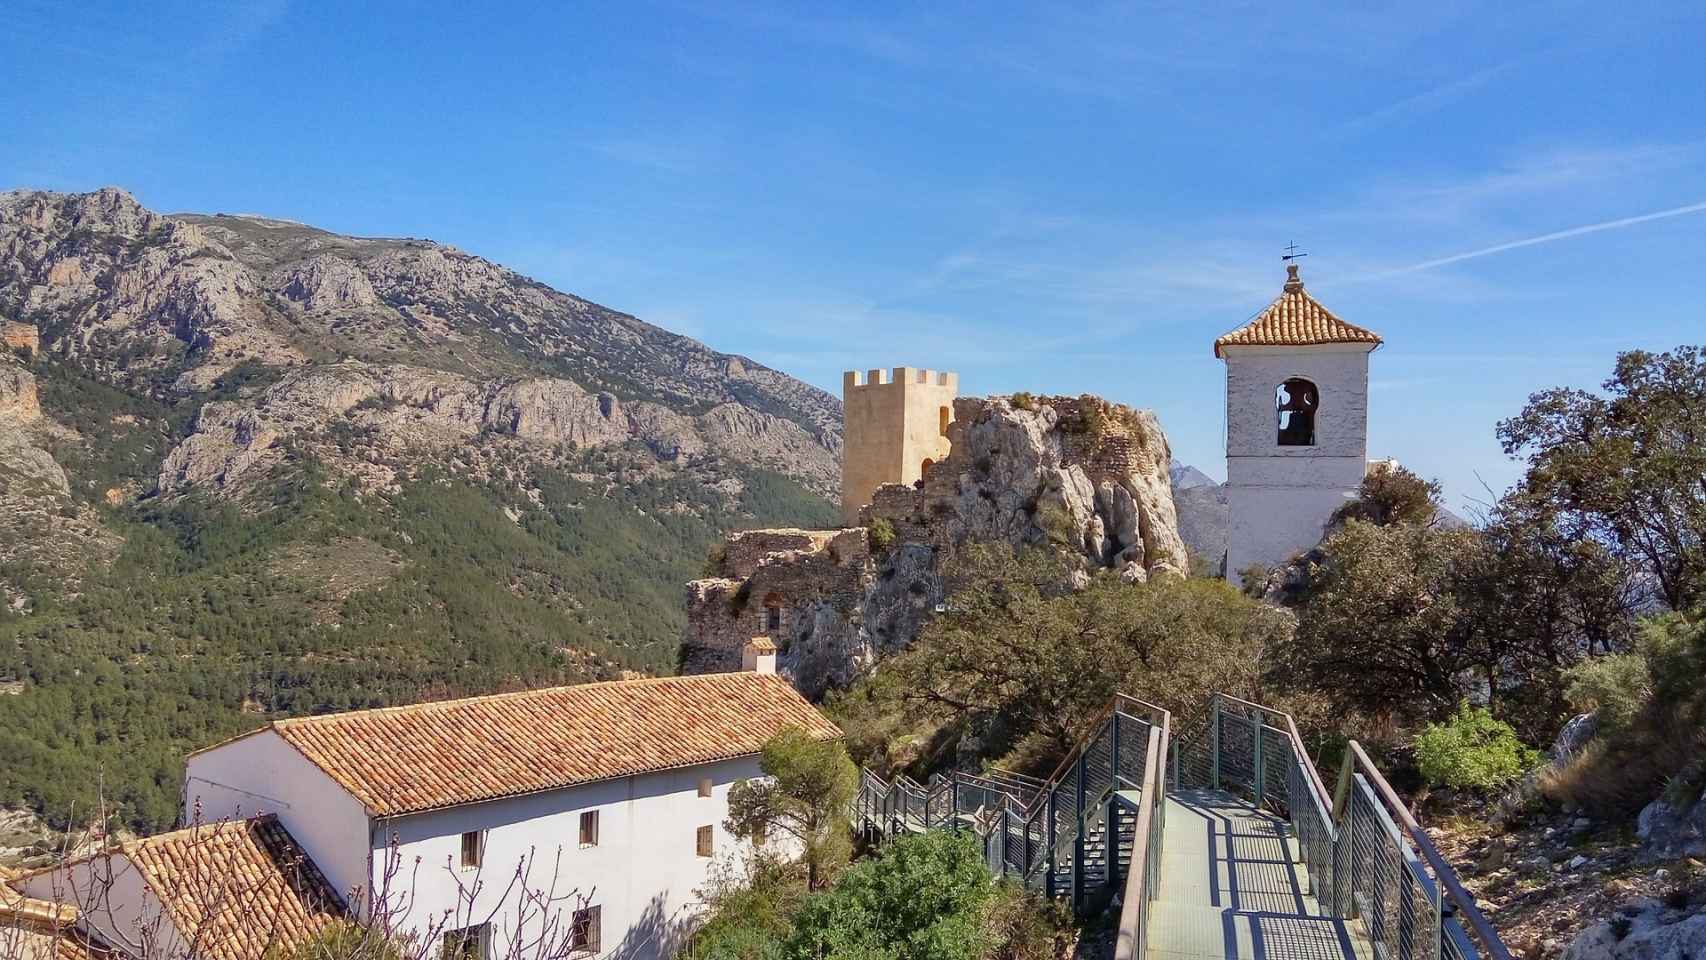 Paisaje del pueblo de Guadalest, Castillo de San José a lo lejos.